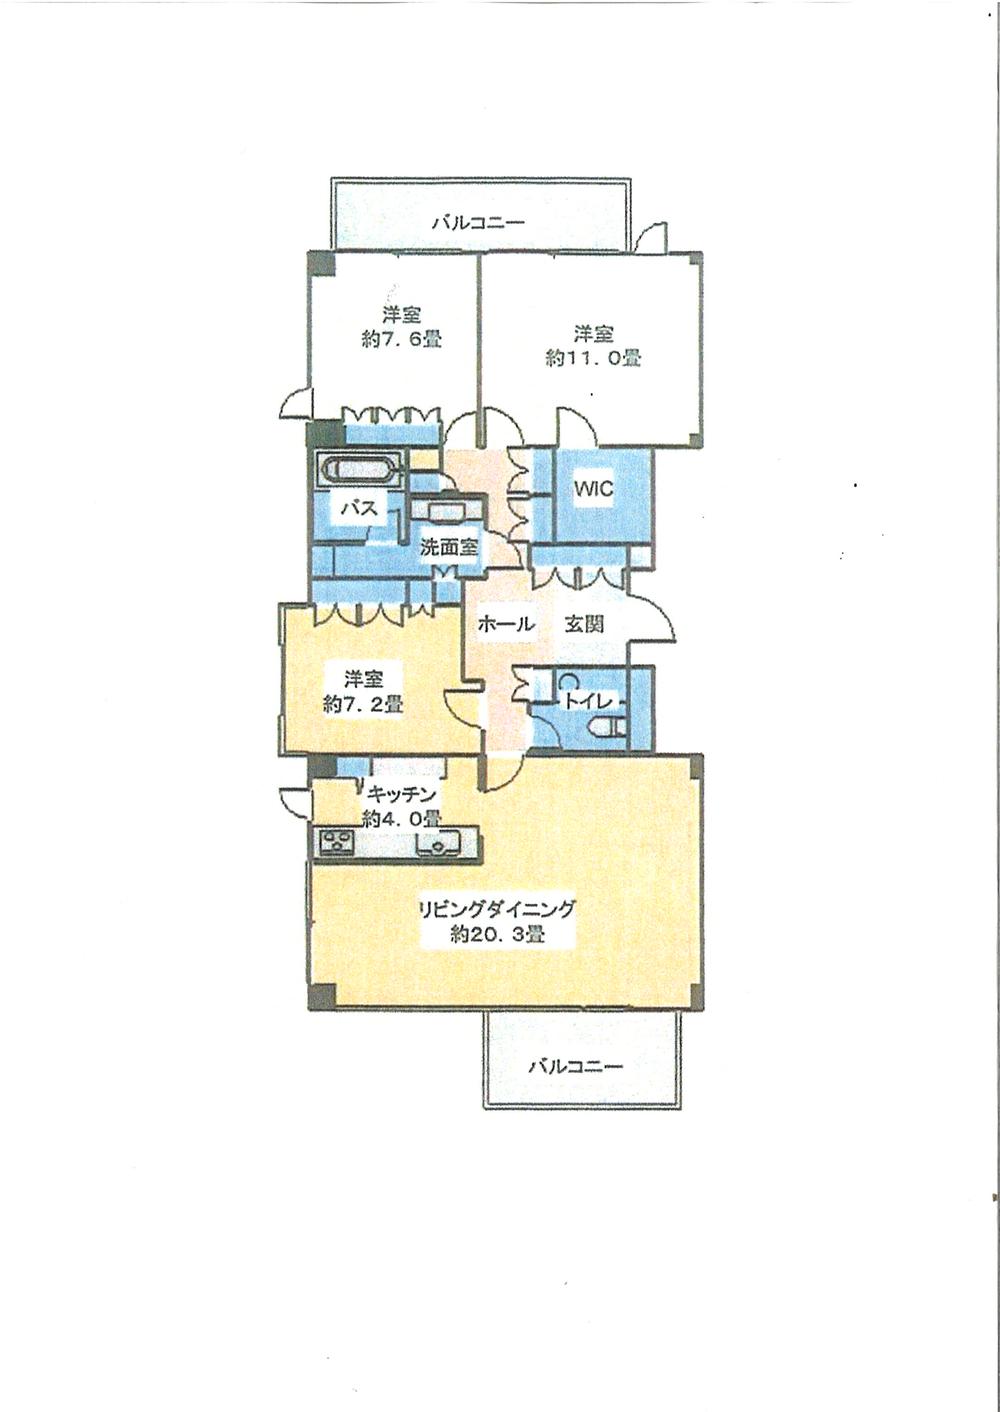 Floor plan. 3LDK, Price 84,200,000 yen, Footprint 118.12 sq m , Balcony area 15.24 sq m floor plan